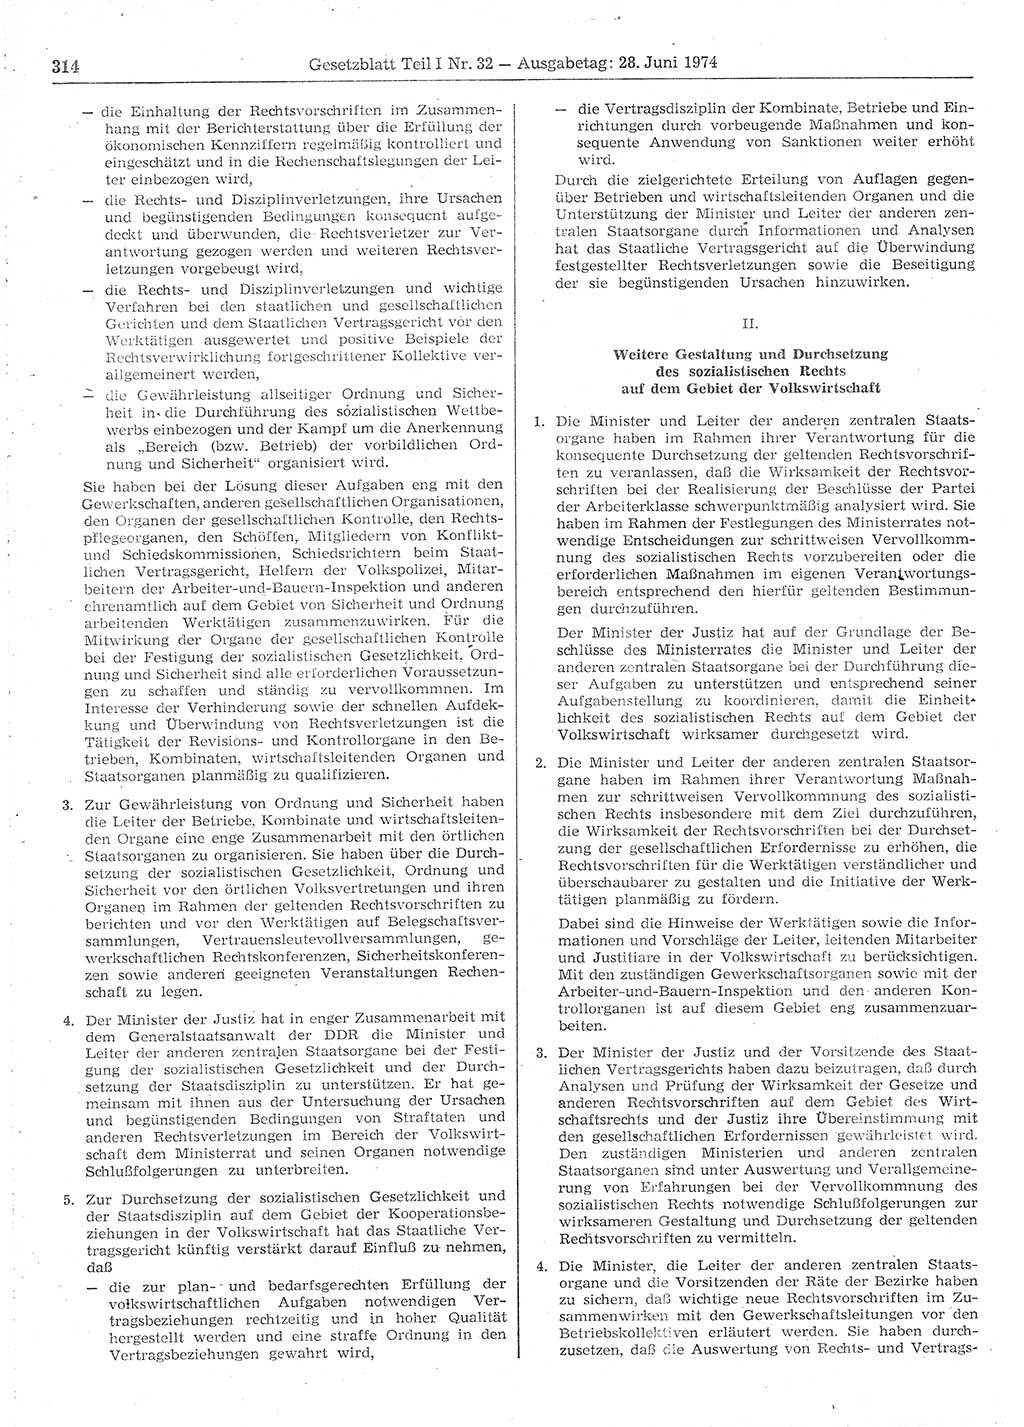 Gesetzblatt (GBl.) der Deutschen Demokratischen Republik (DDR) Teil Ⅰ 1974, Seite 314 (GBl. DDR Ⅰ 1974, S. 314)